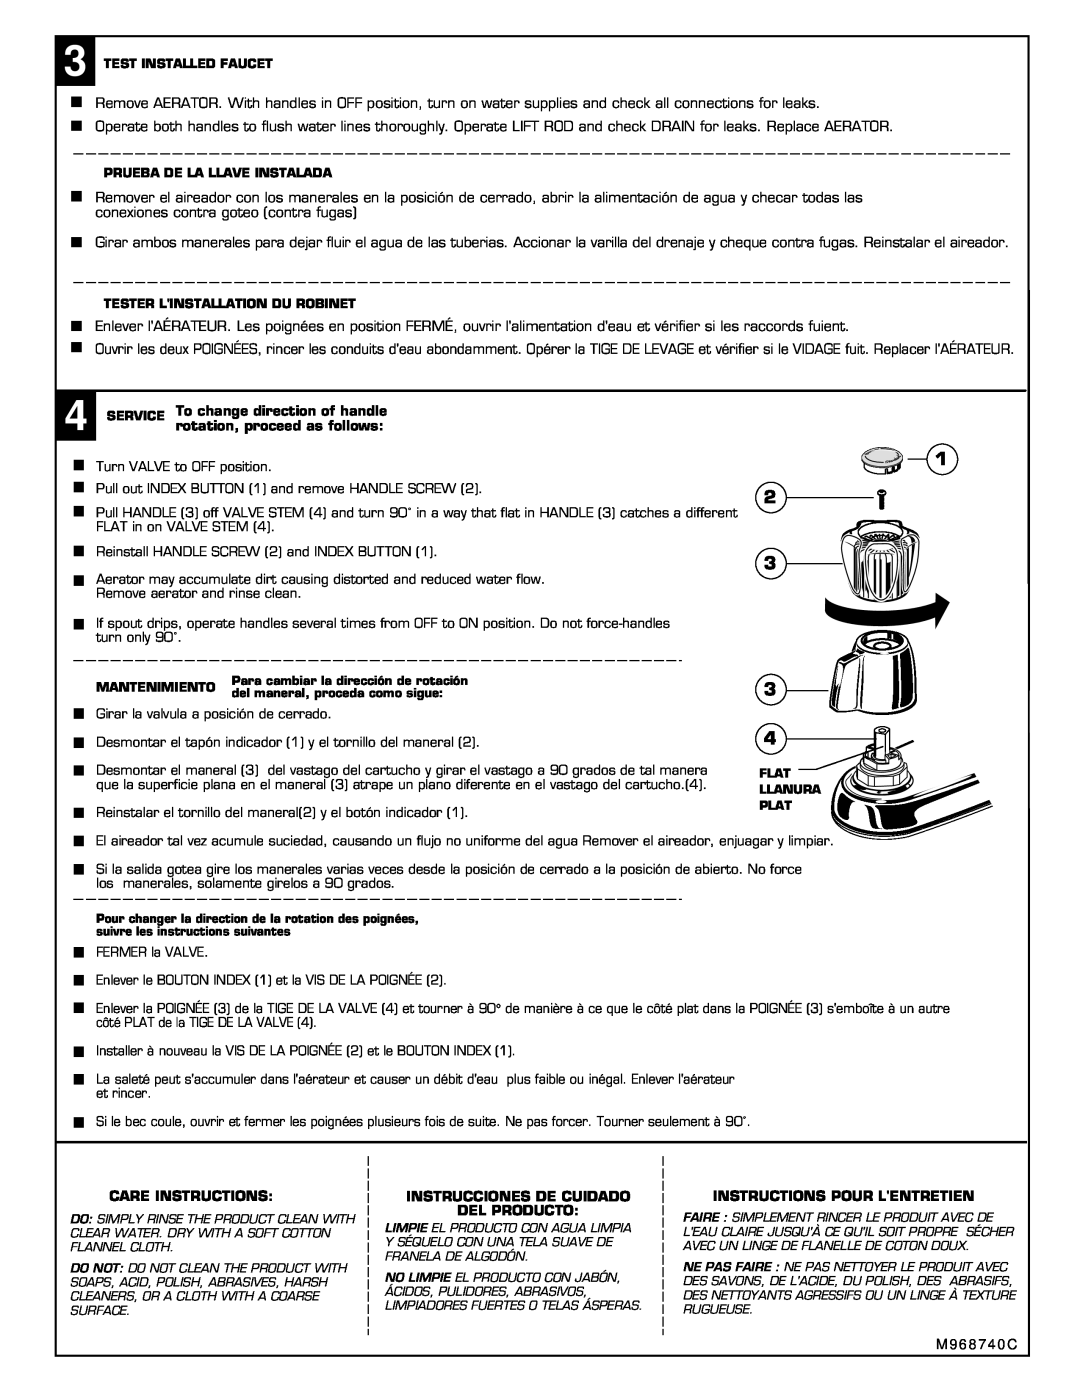 American Standard 2475 Series rotation, proceed as follows, Care Instructions, Instrucciones De Cuidado Del Producto 